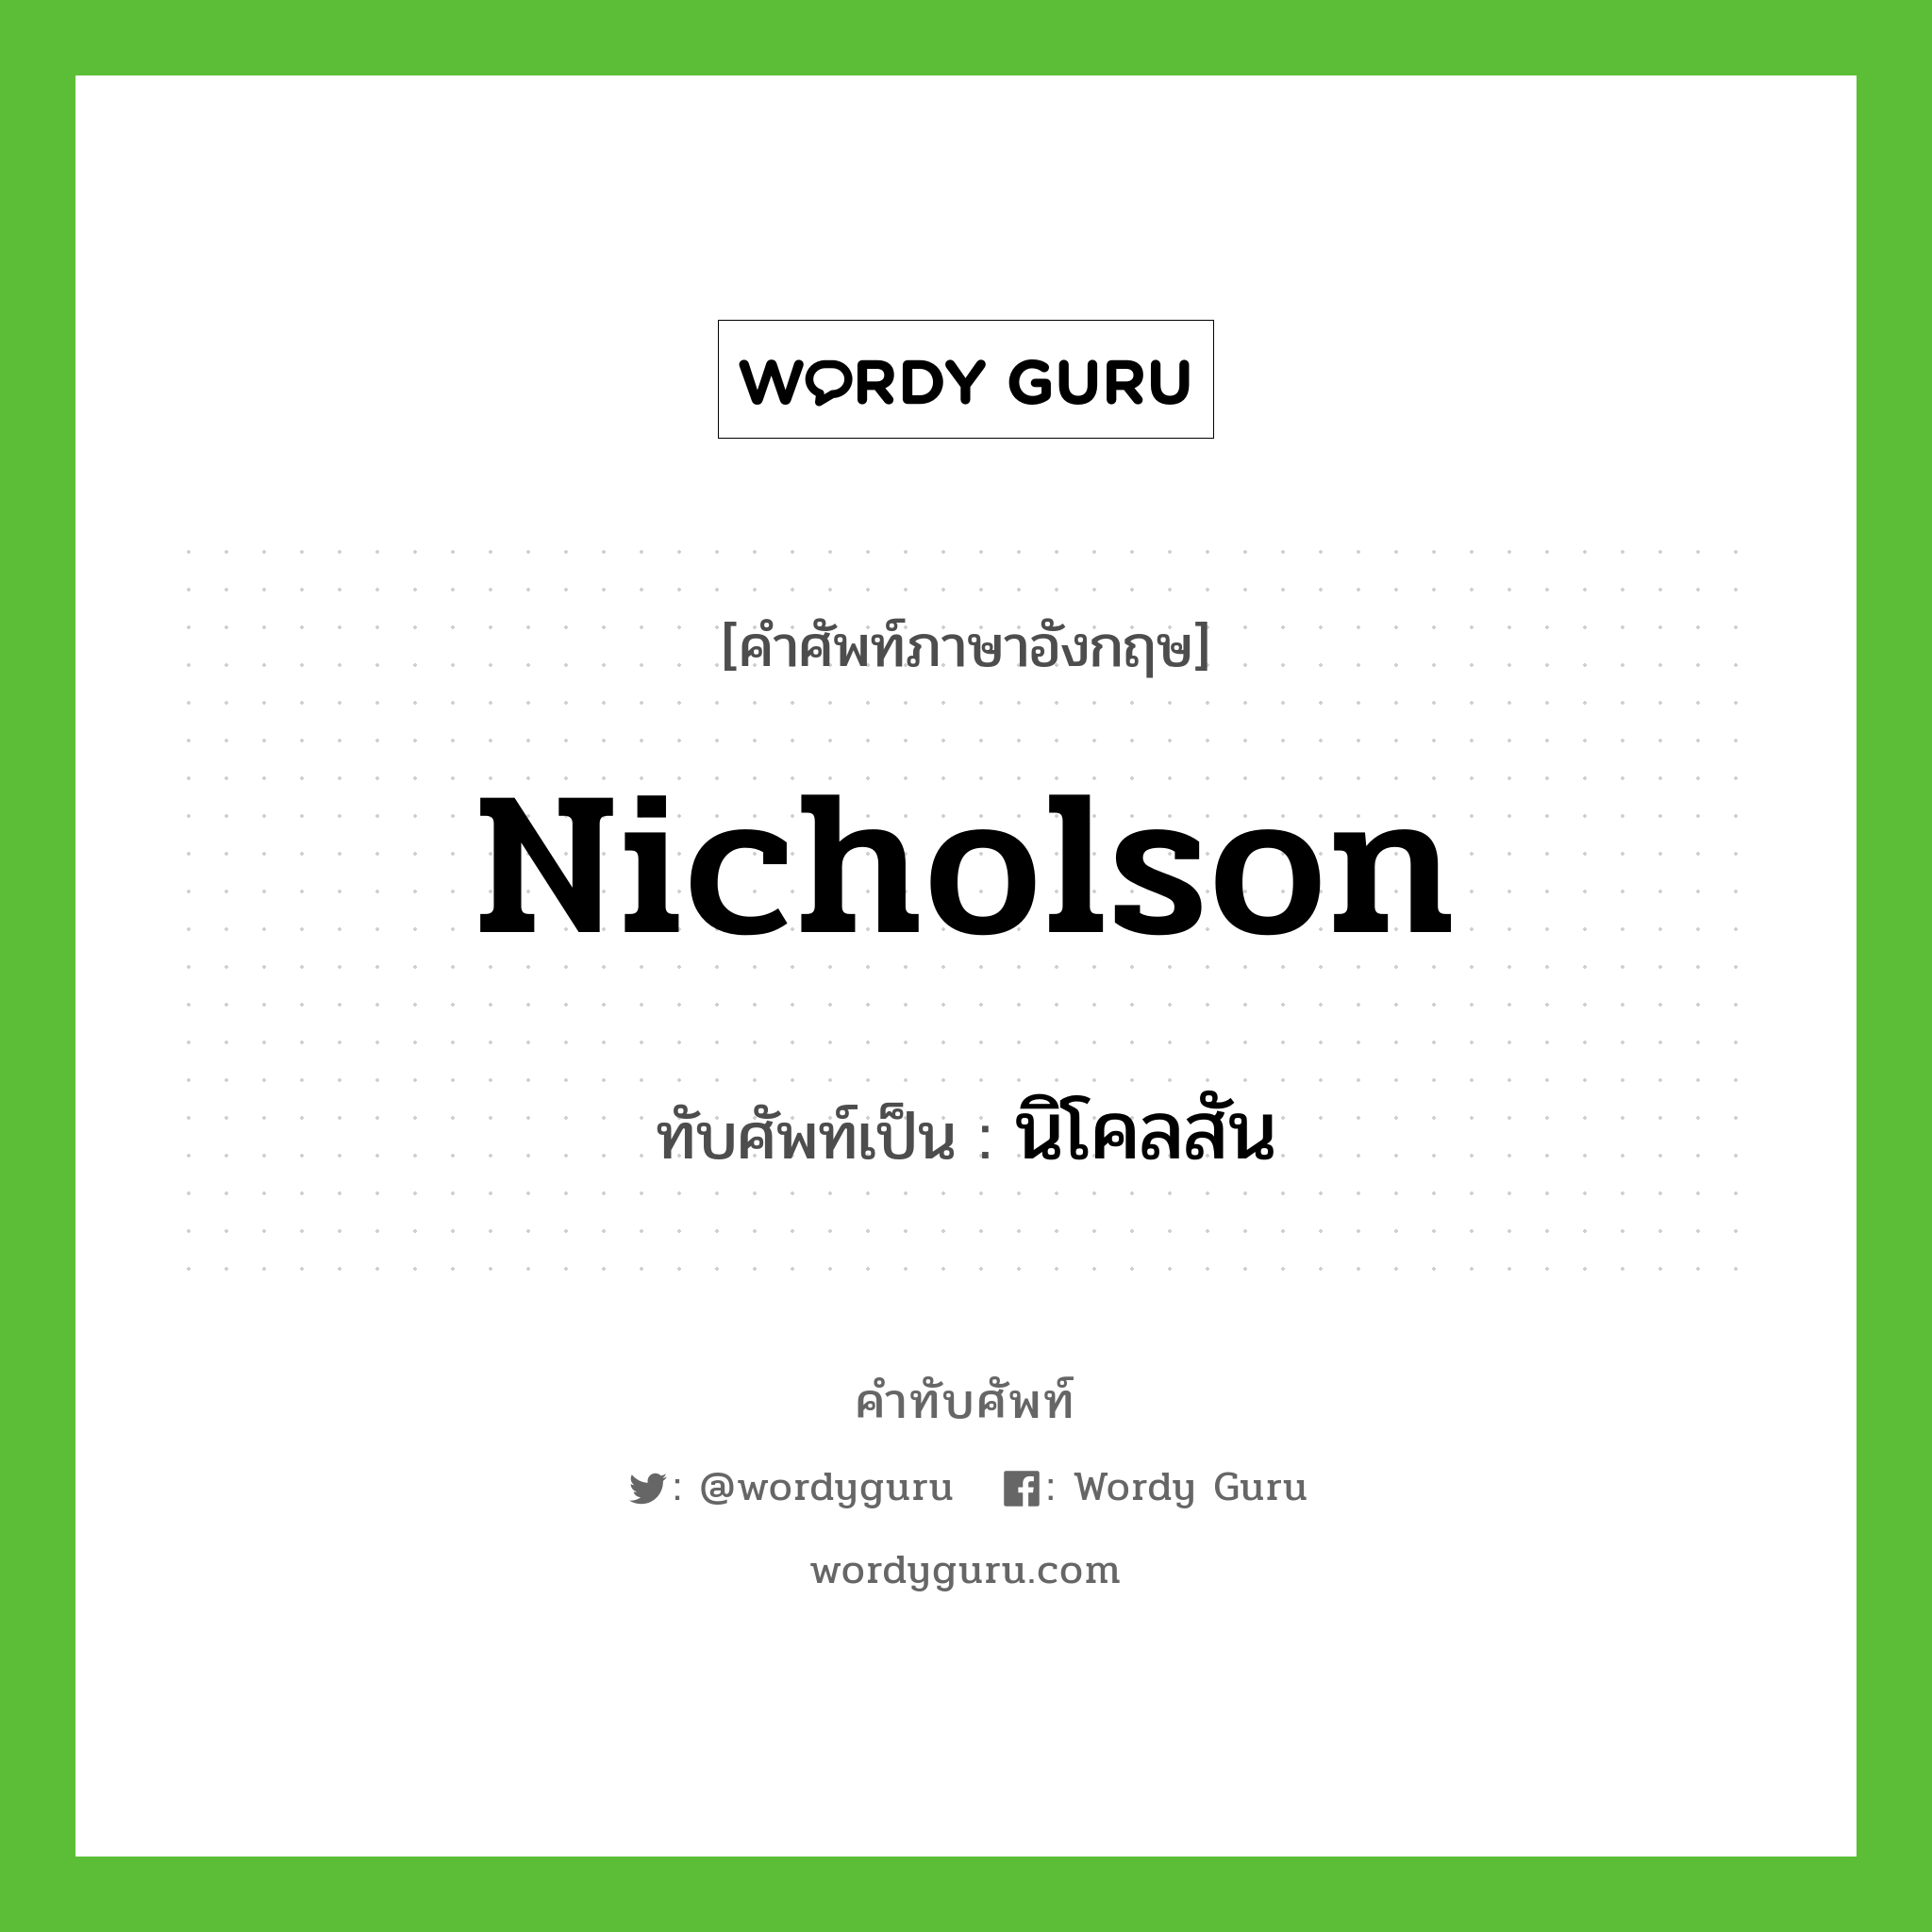 นิโคลสัน เขียนอย่างไร?, คำศัพท์ภาษาอังกฤษ นิโคลสัน ทับศัพท์เป็น Nicholson